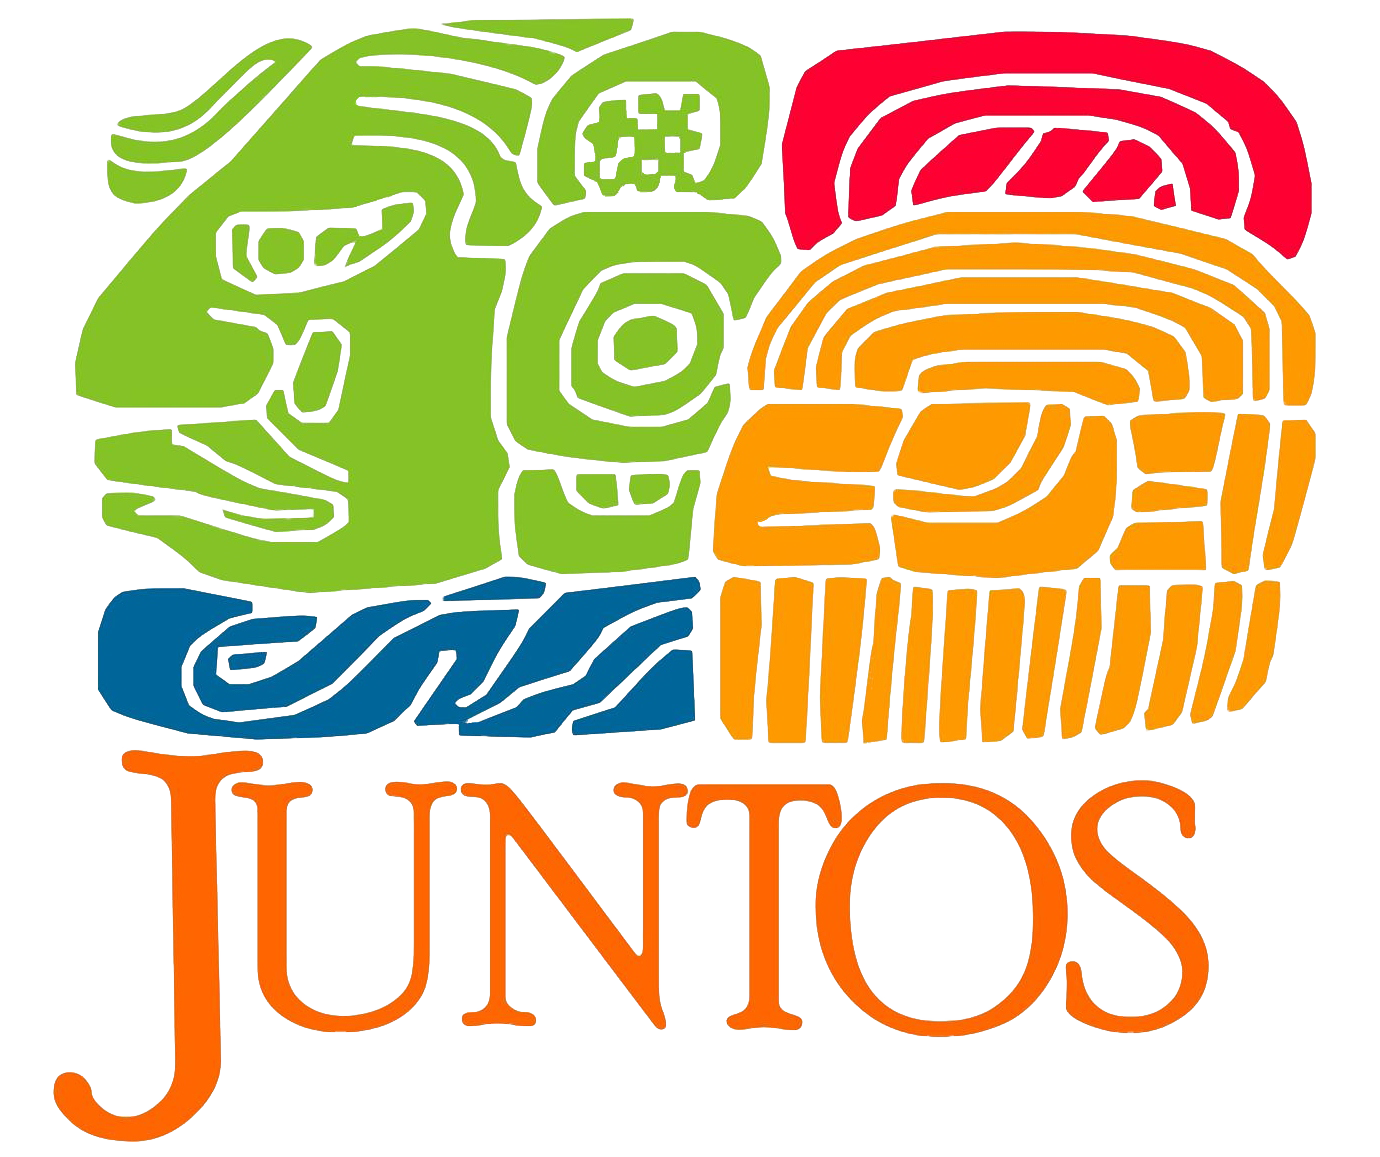 Juntos logo featuring bright colors and "JUNTOS" in orange.